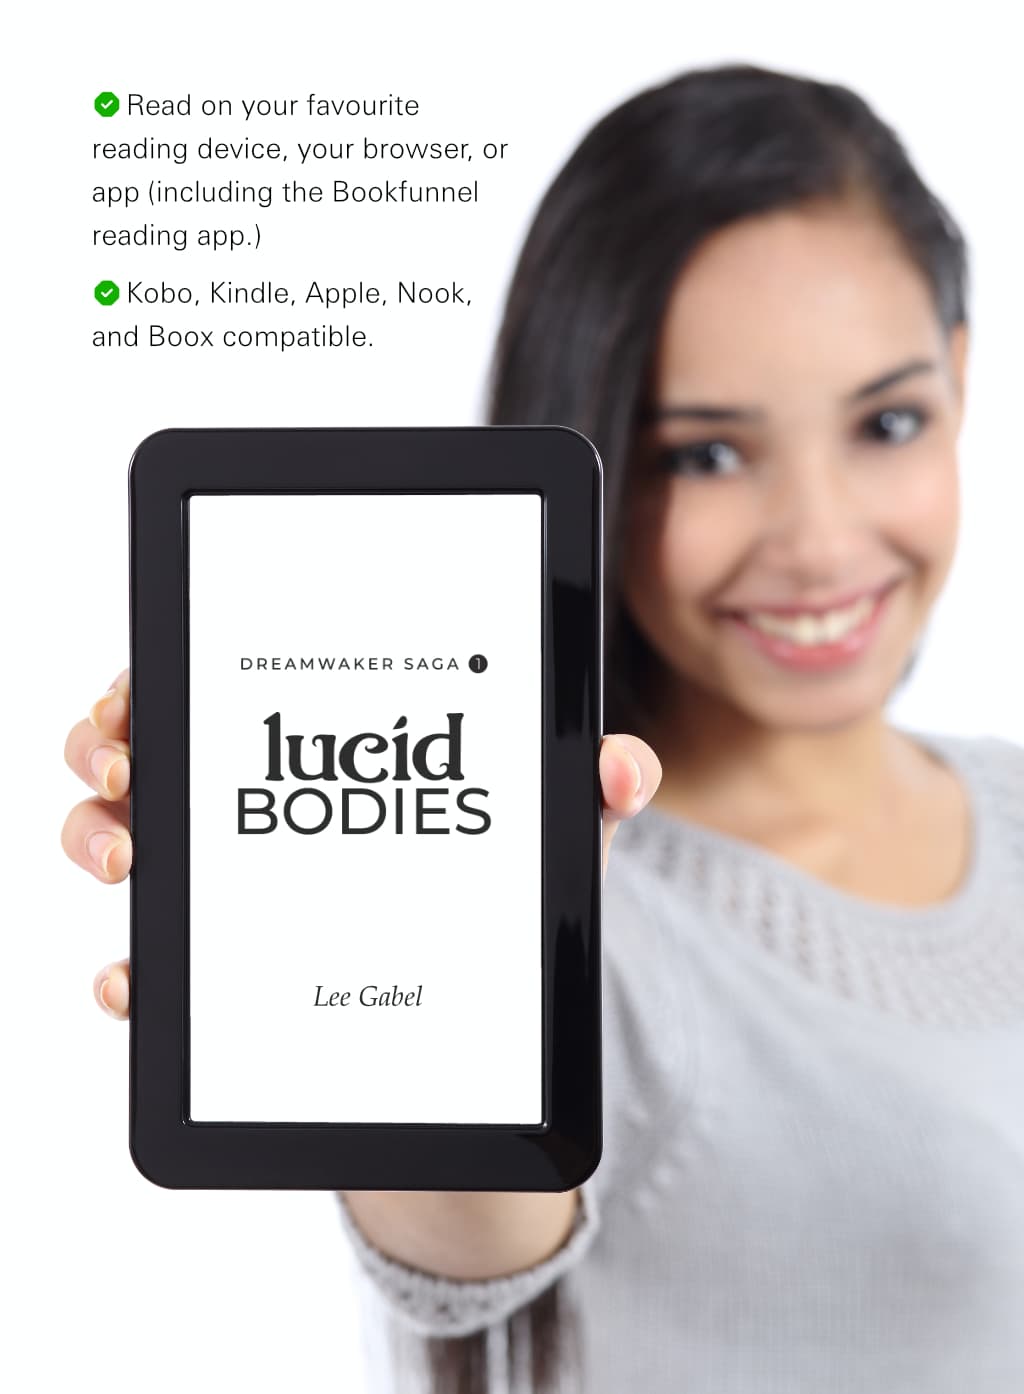 E-reader compatibility guarantee for Lucid Bodies e-book.